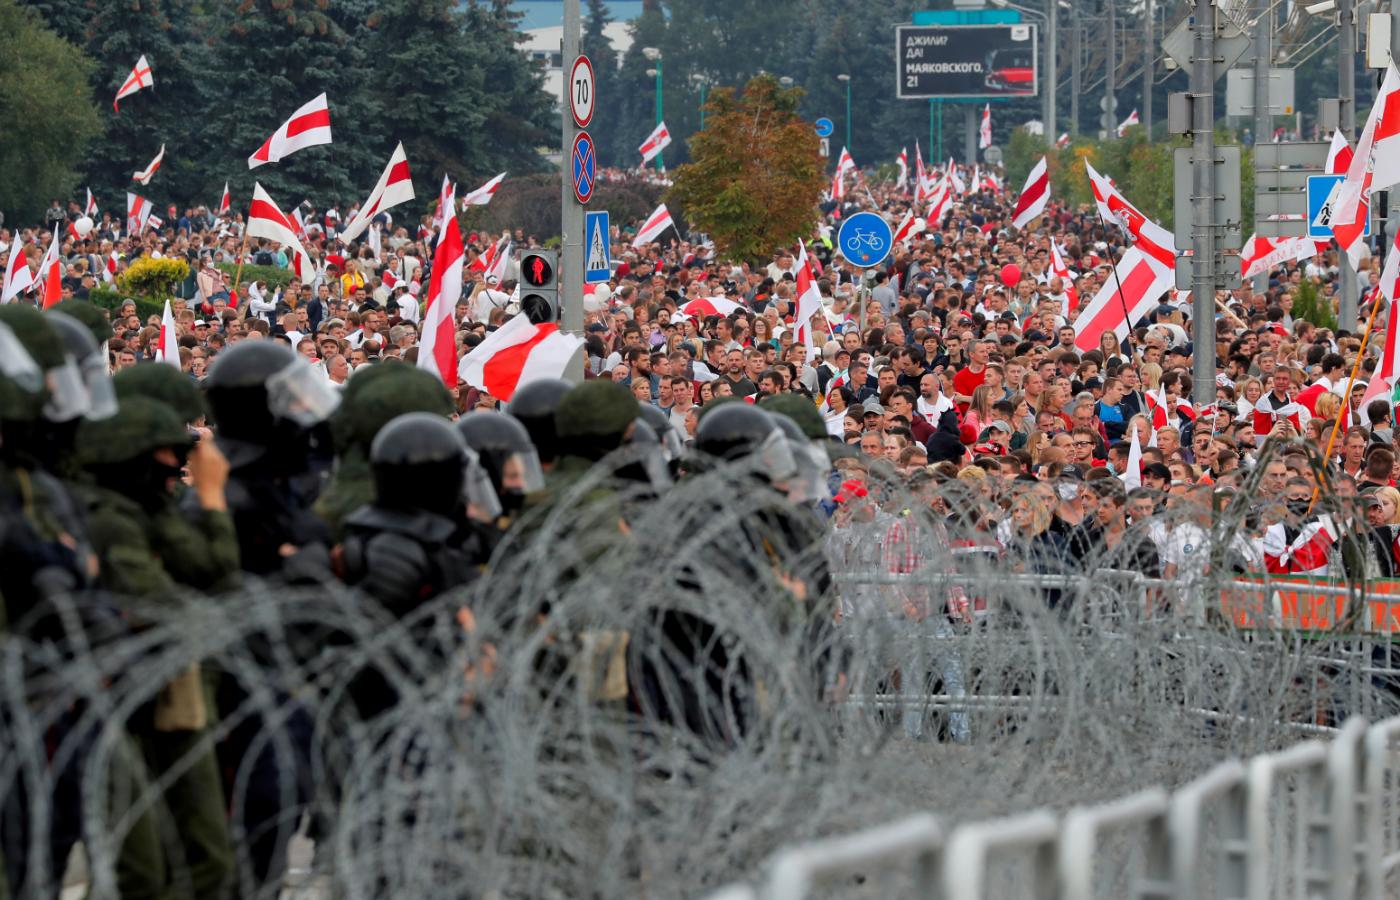 Białorusini wciąż protestują. Mińsk, 23 sierpnia 2020 r.